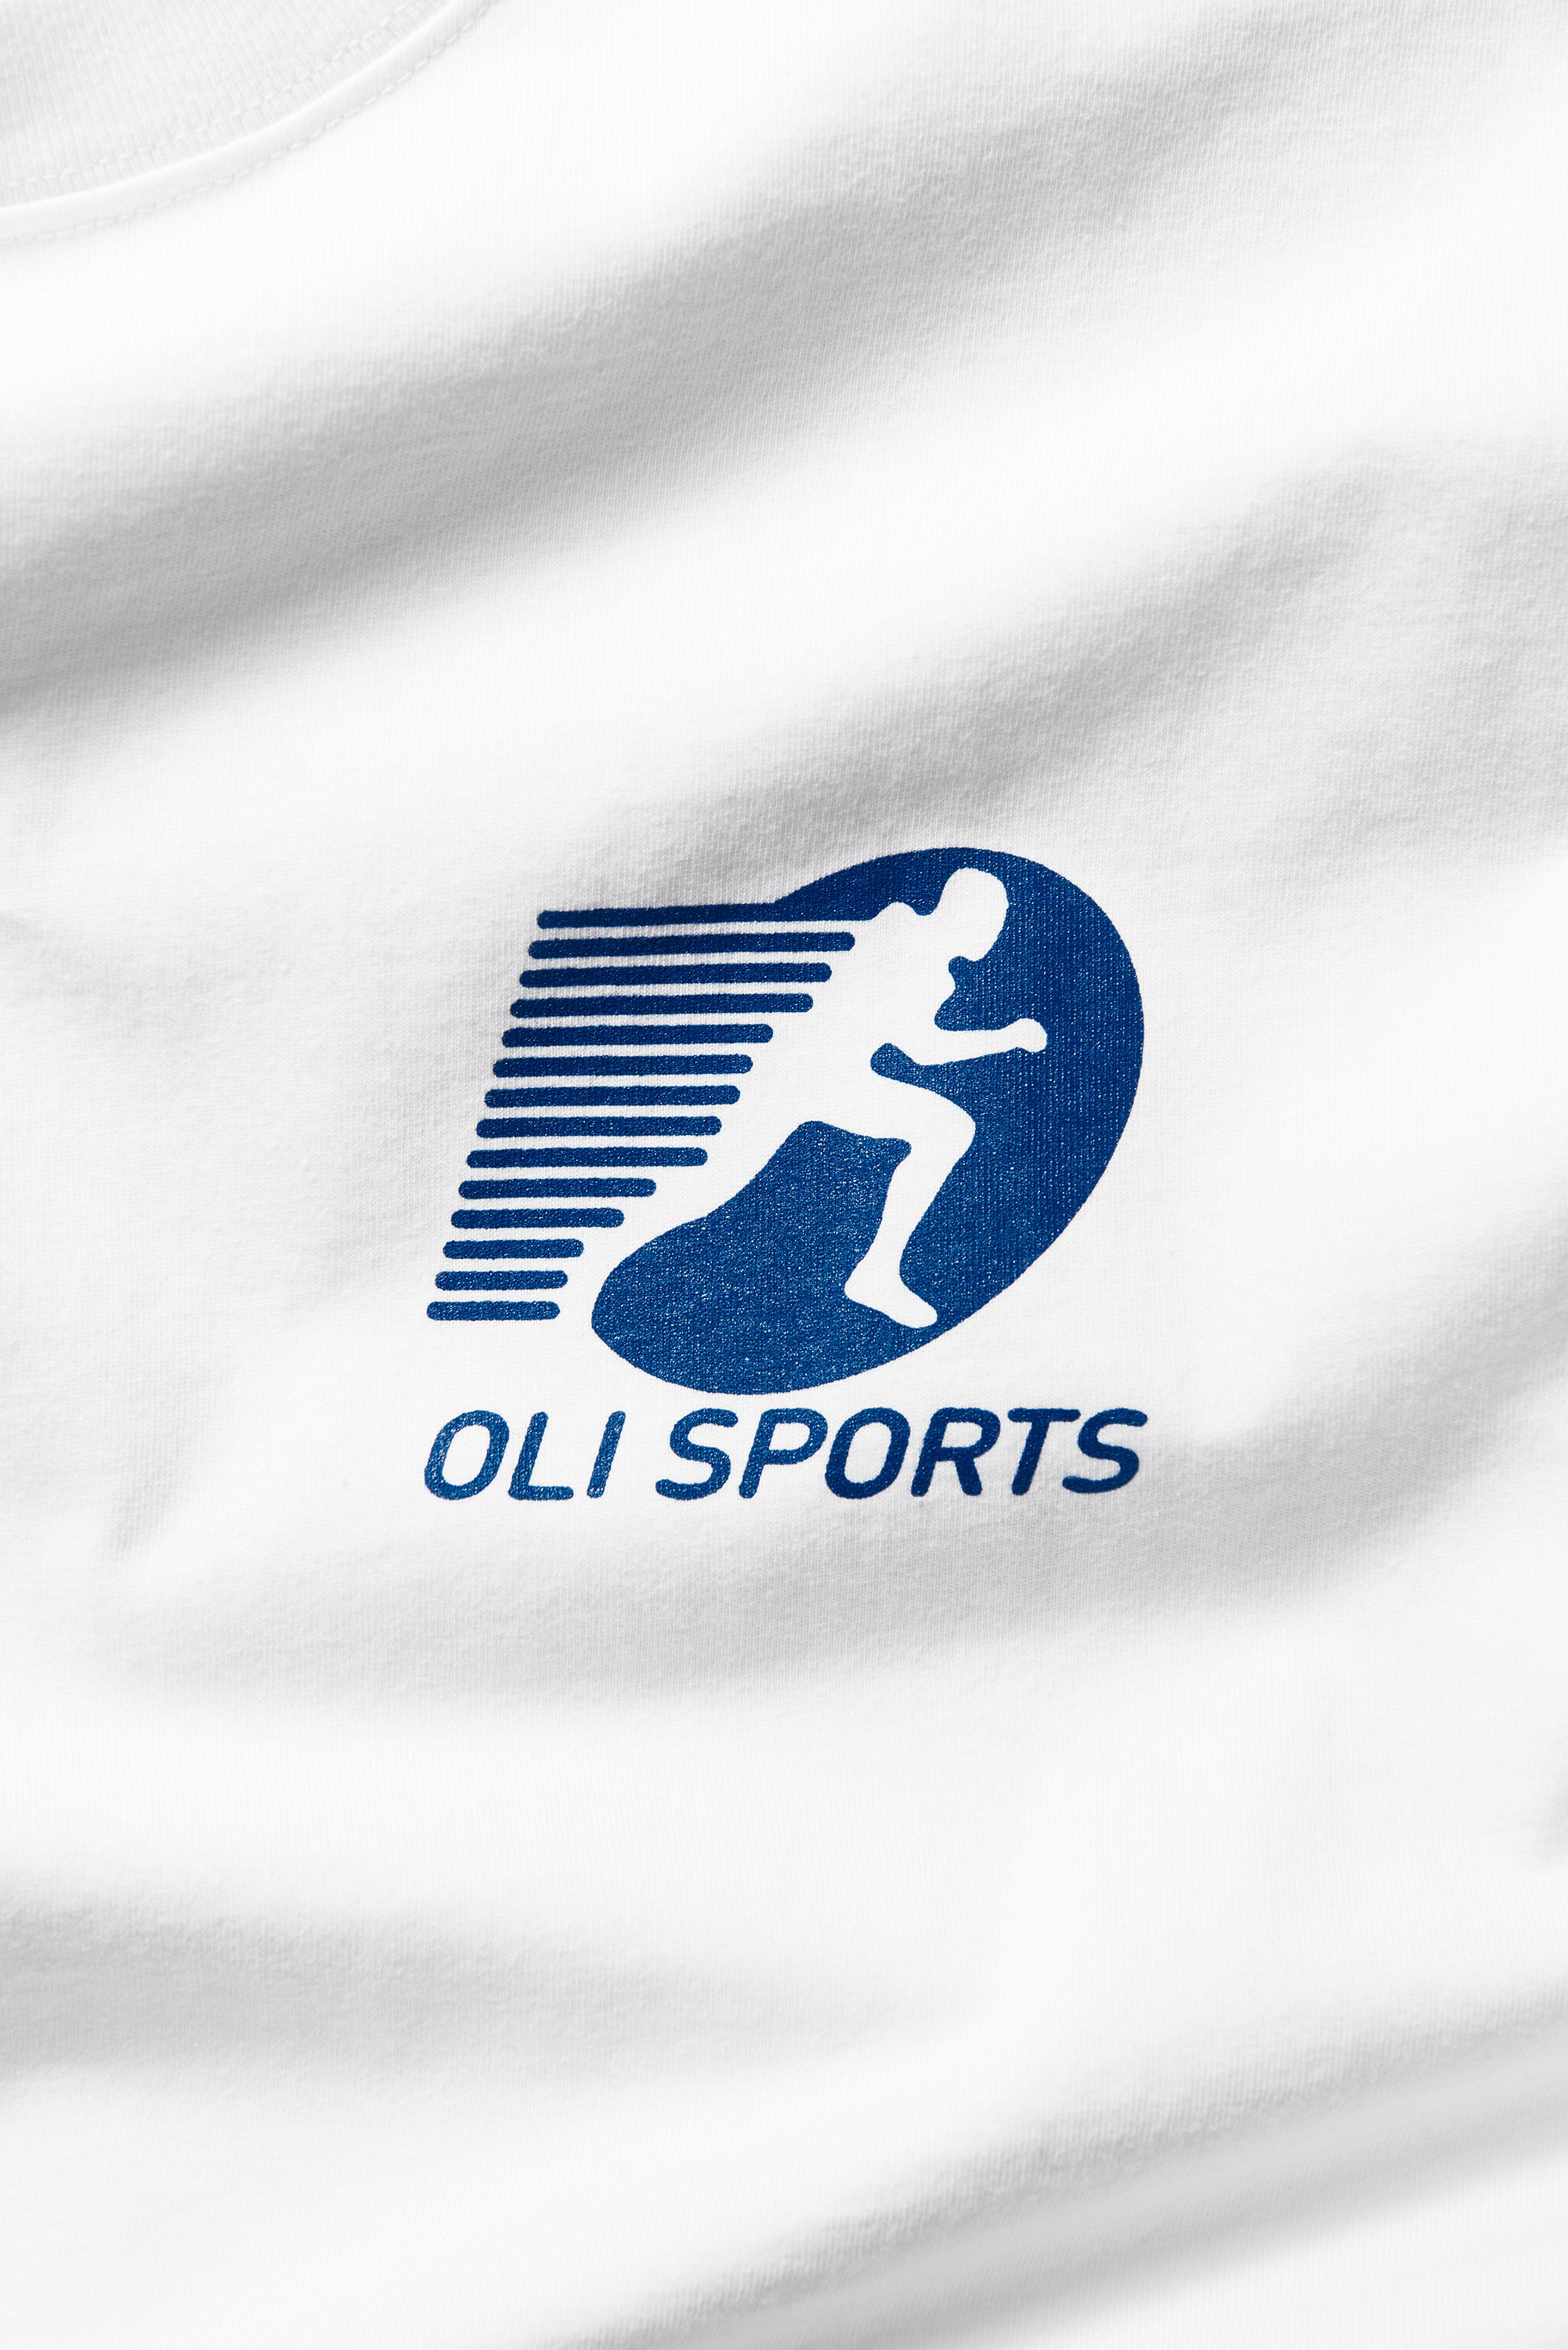 Oli Sports T - White